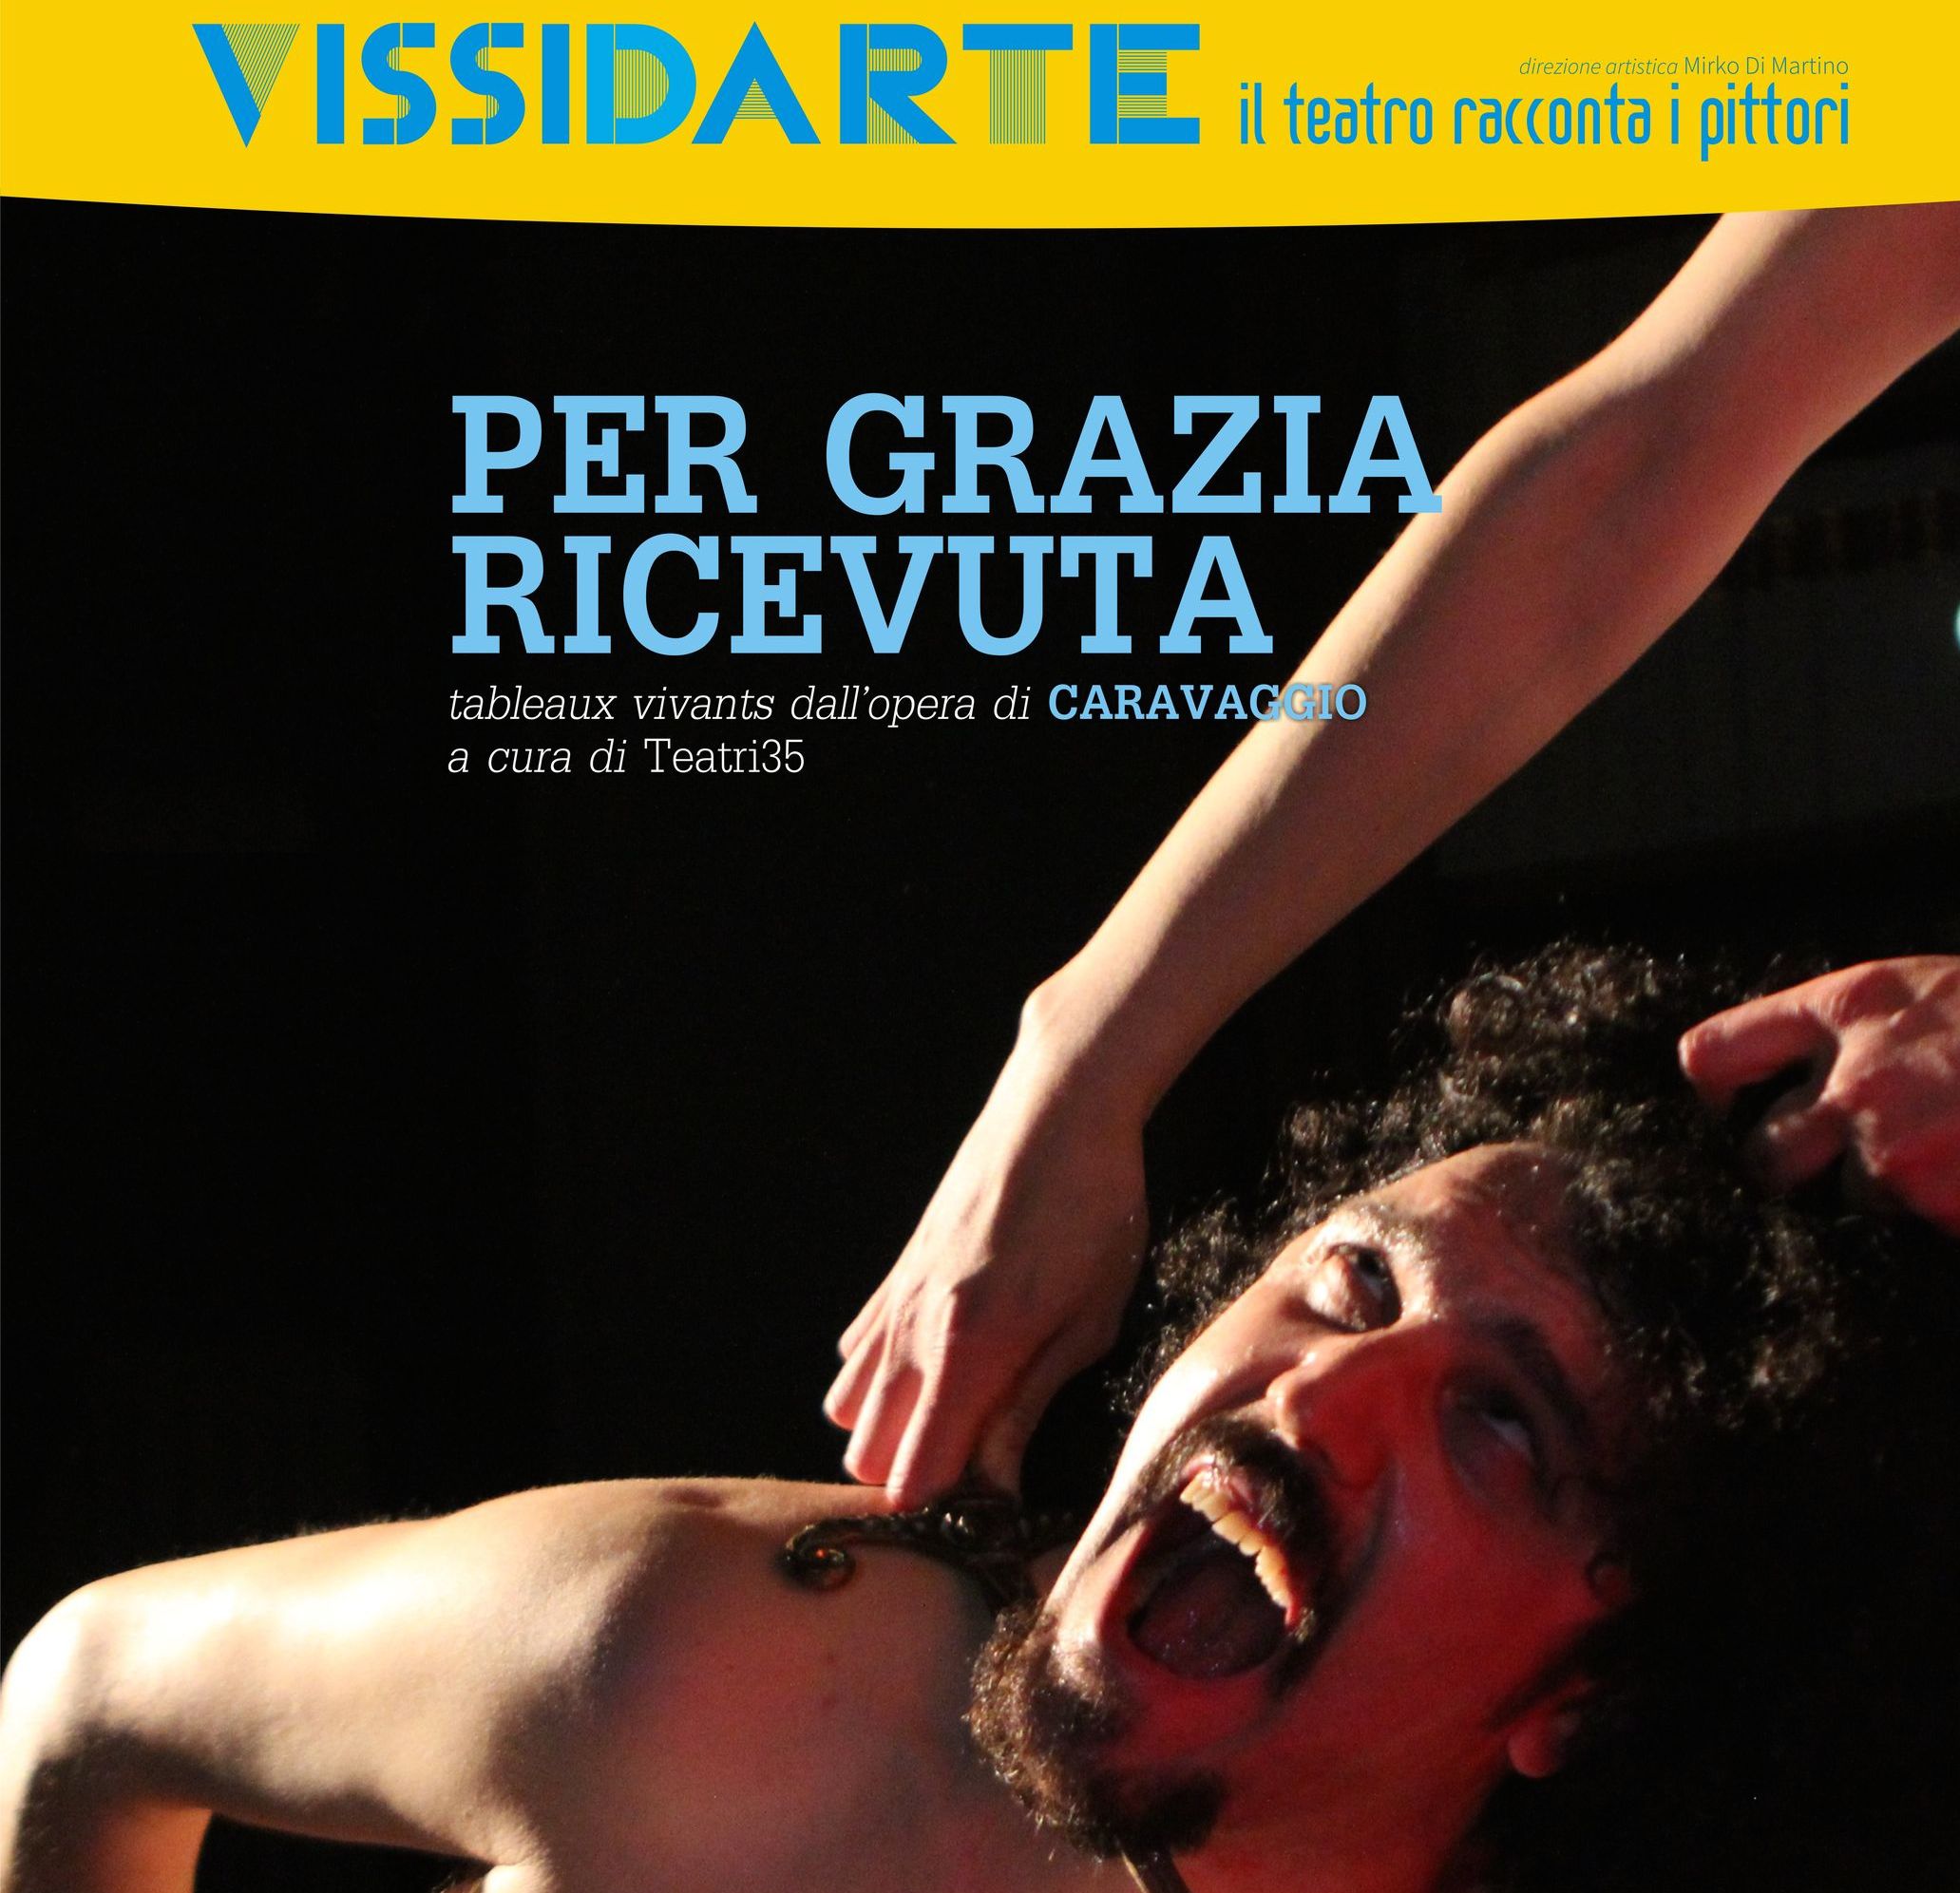 2015.09.10 - La vita del Caravaggio raccontata a teatro in Per grazia ricevuta